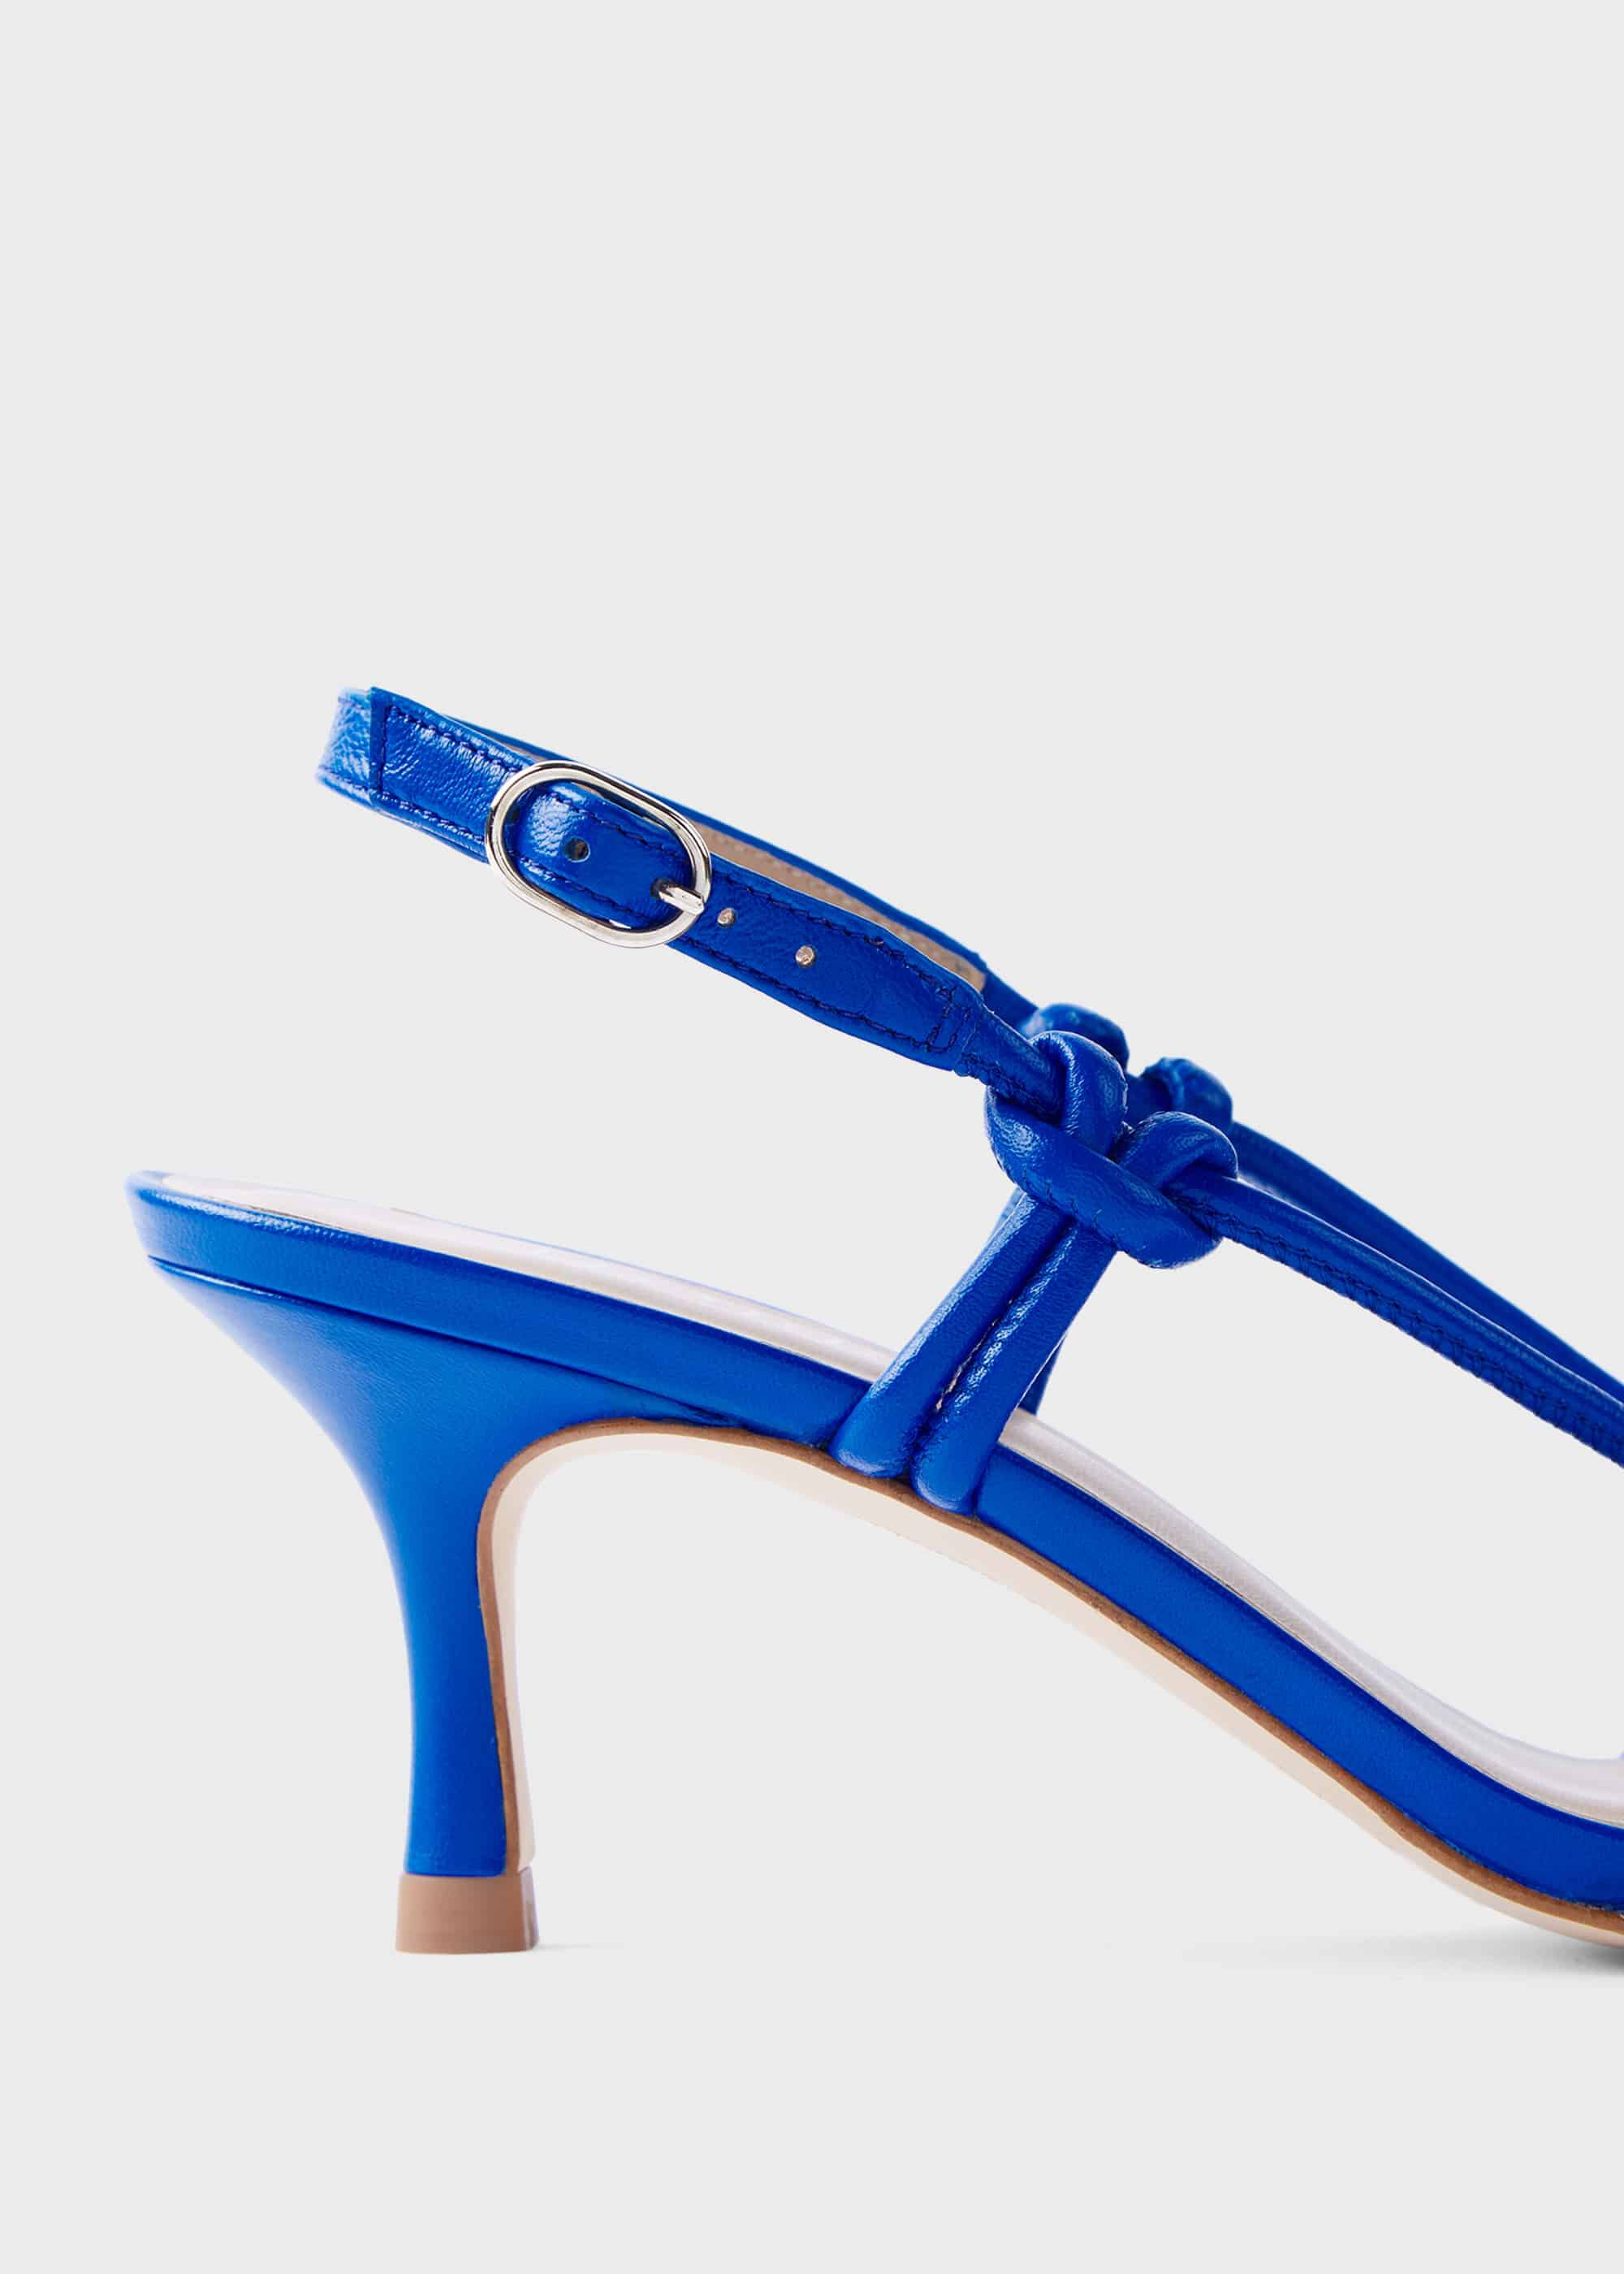 cobalt blue heels